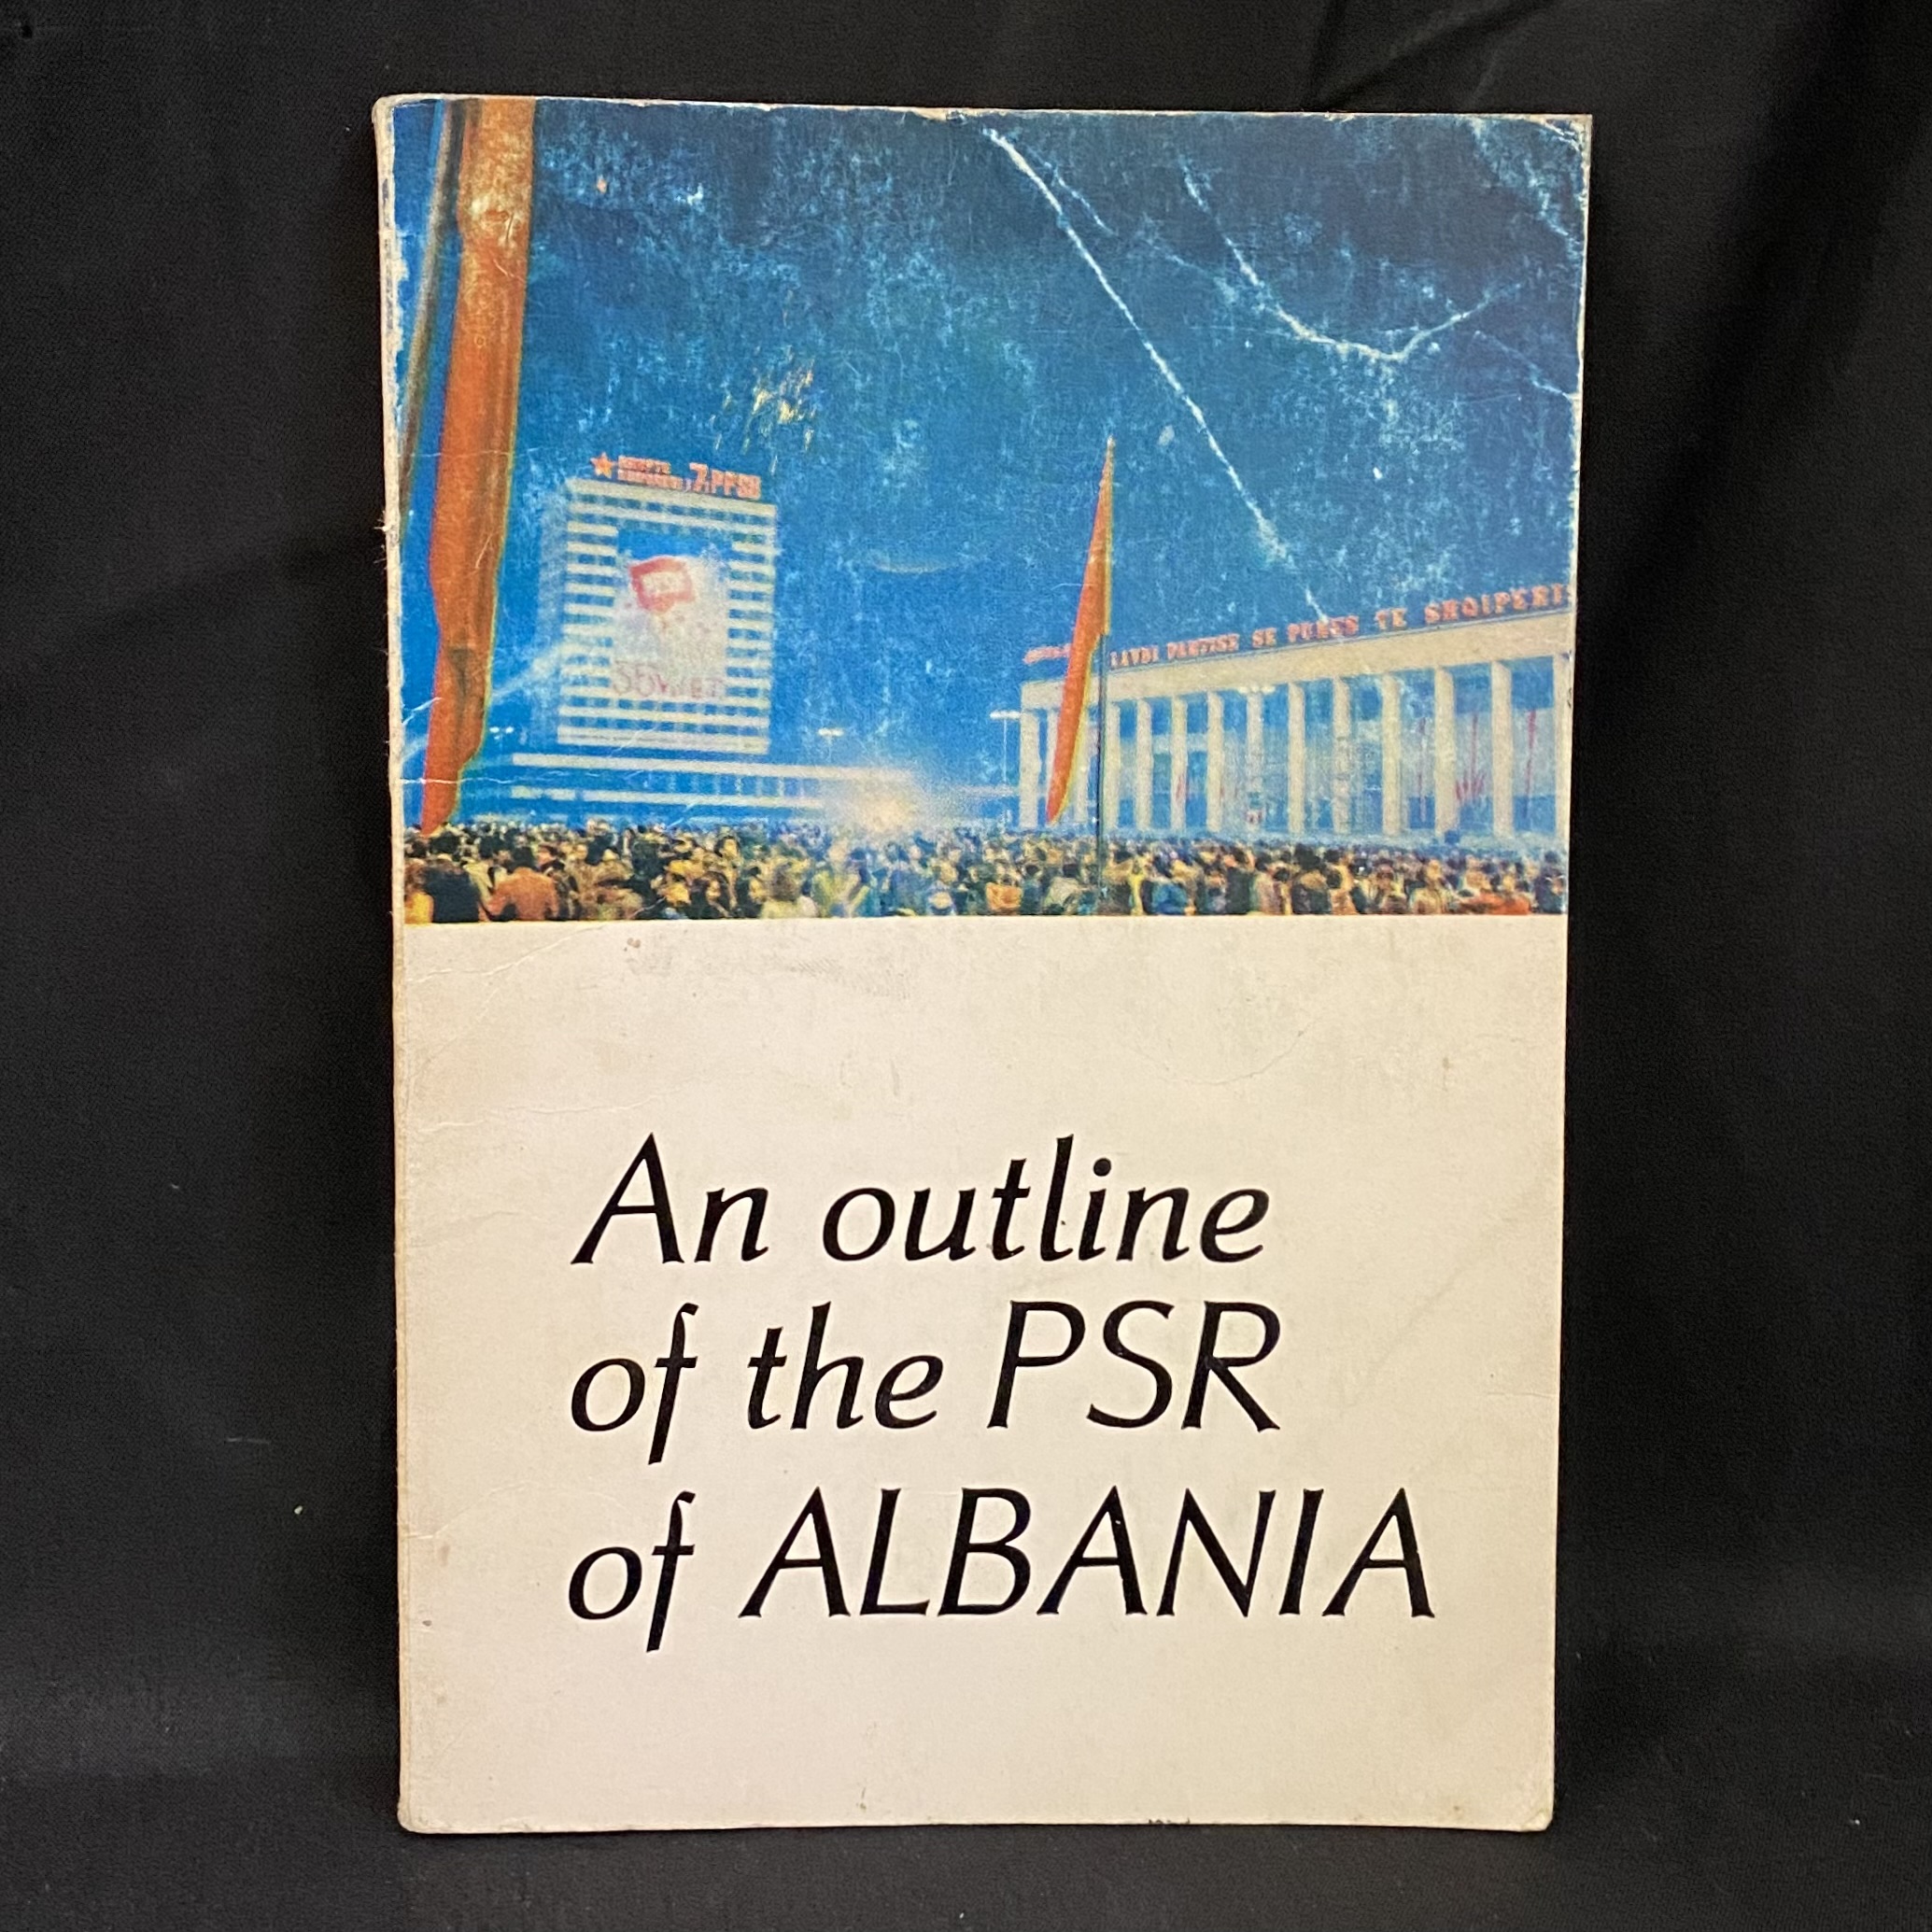 Libër i Vjetër Shqiptar ”Një Skicë e RPS të Shqipërisë” në Anglisht 1978